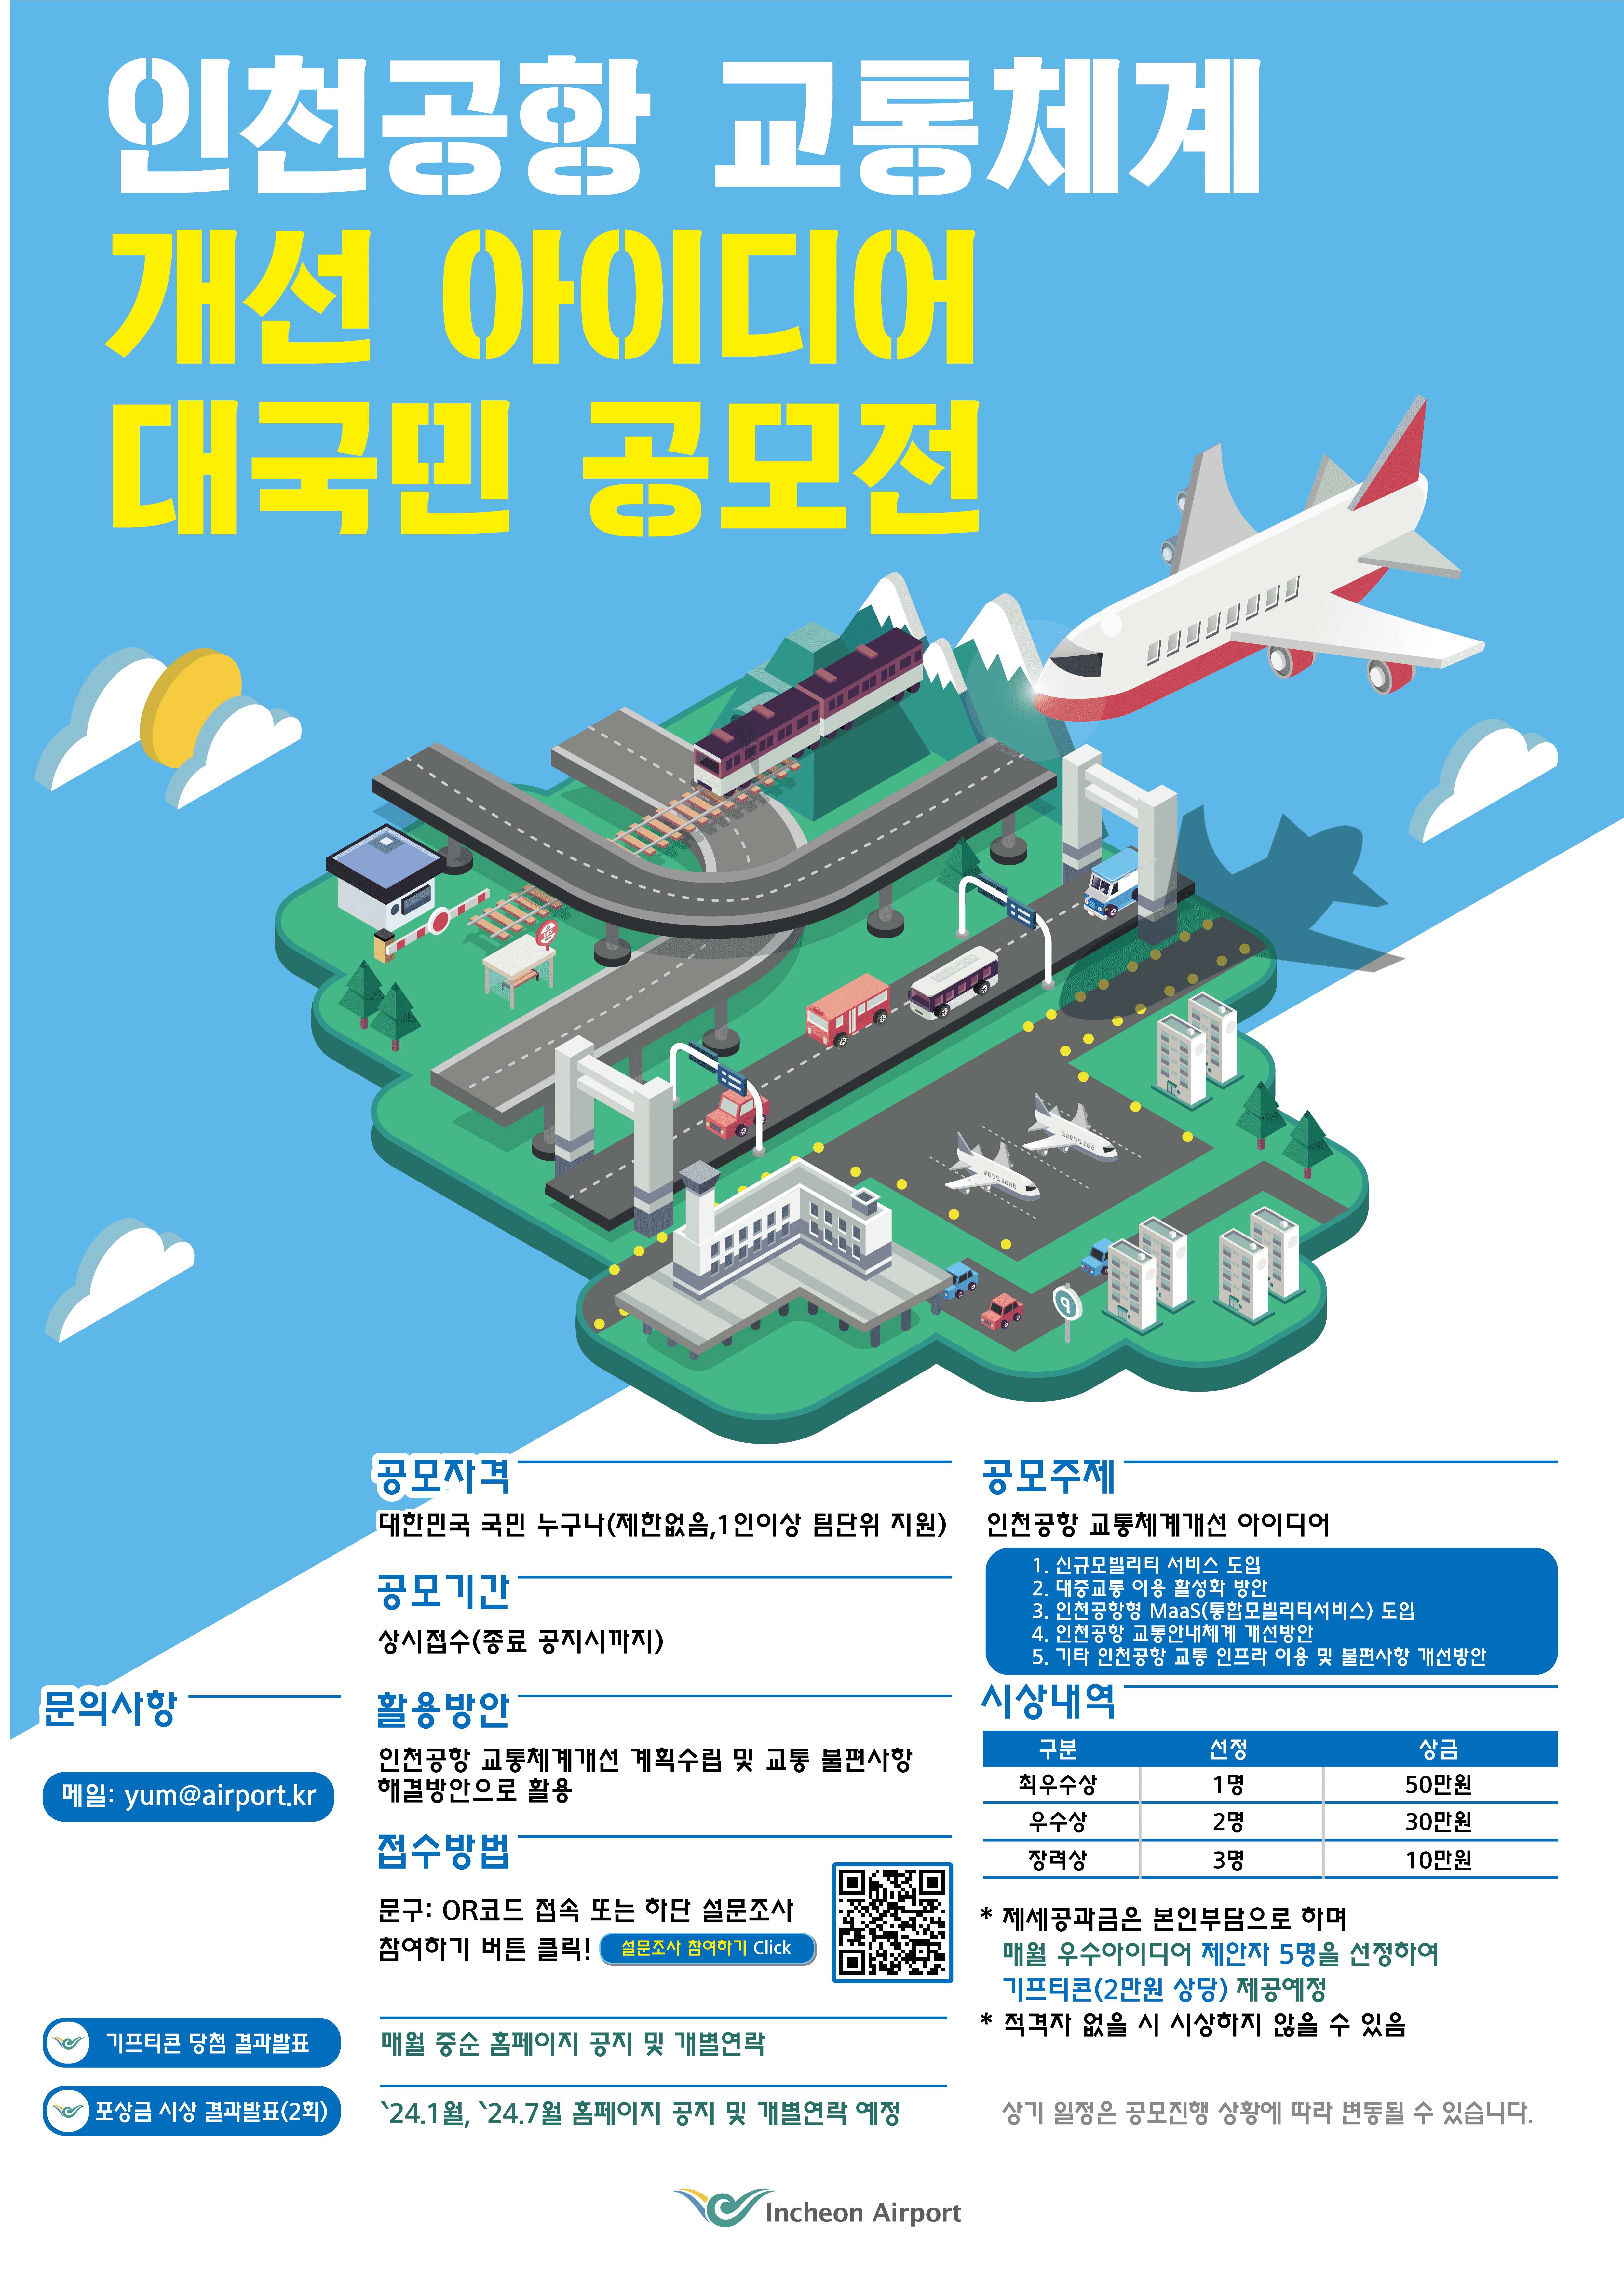 인천공항 교통체계 개선 아이디어 공모전